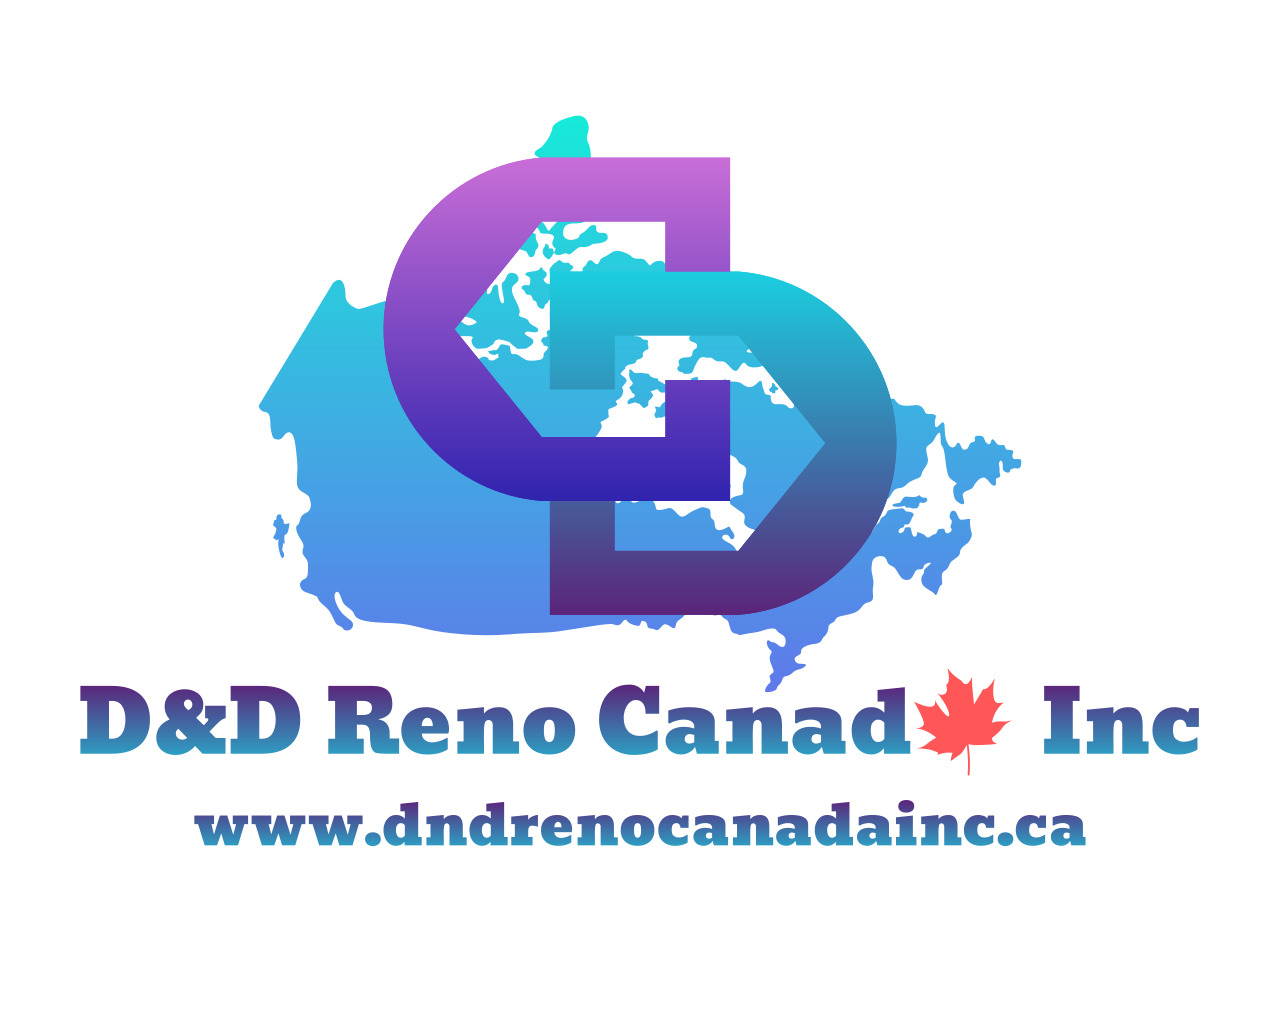 D&D Reno Canada Inc.'s logo